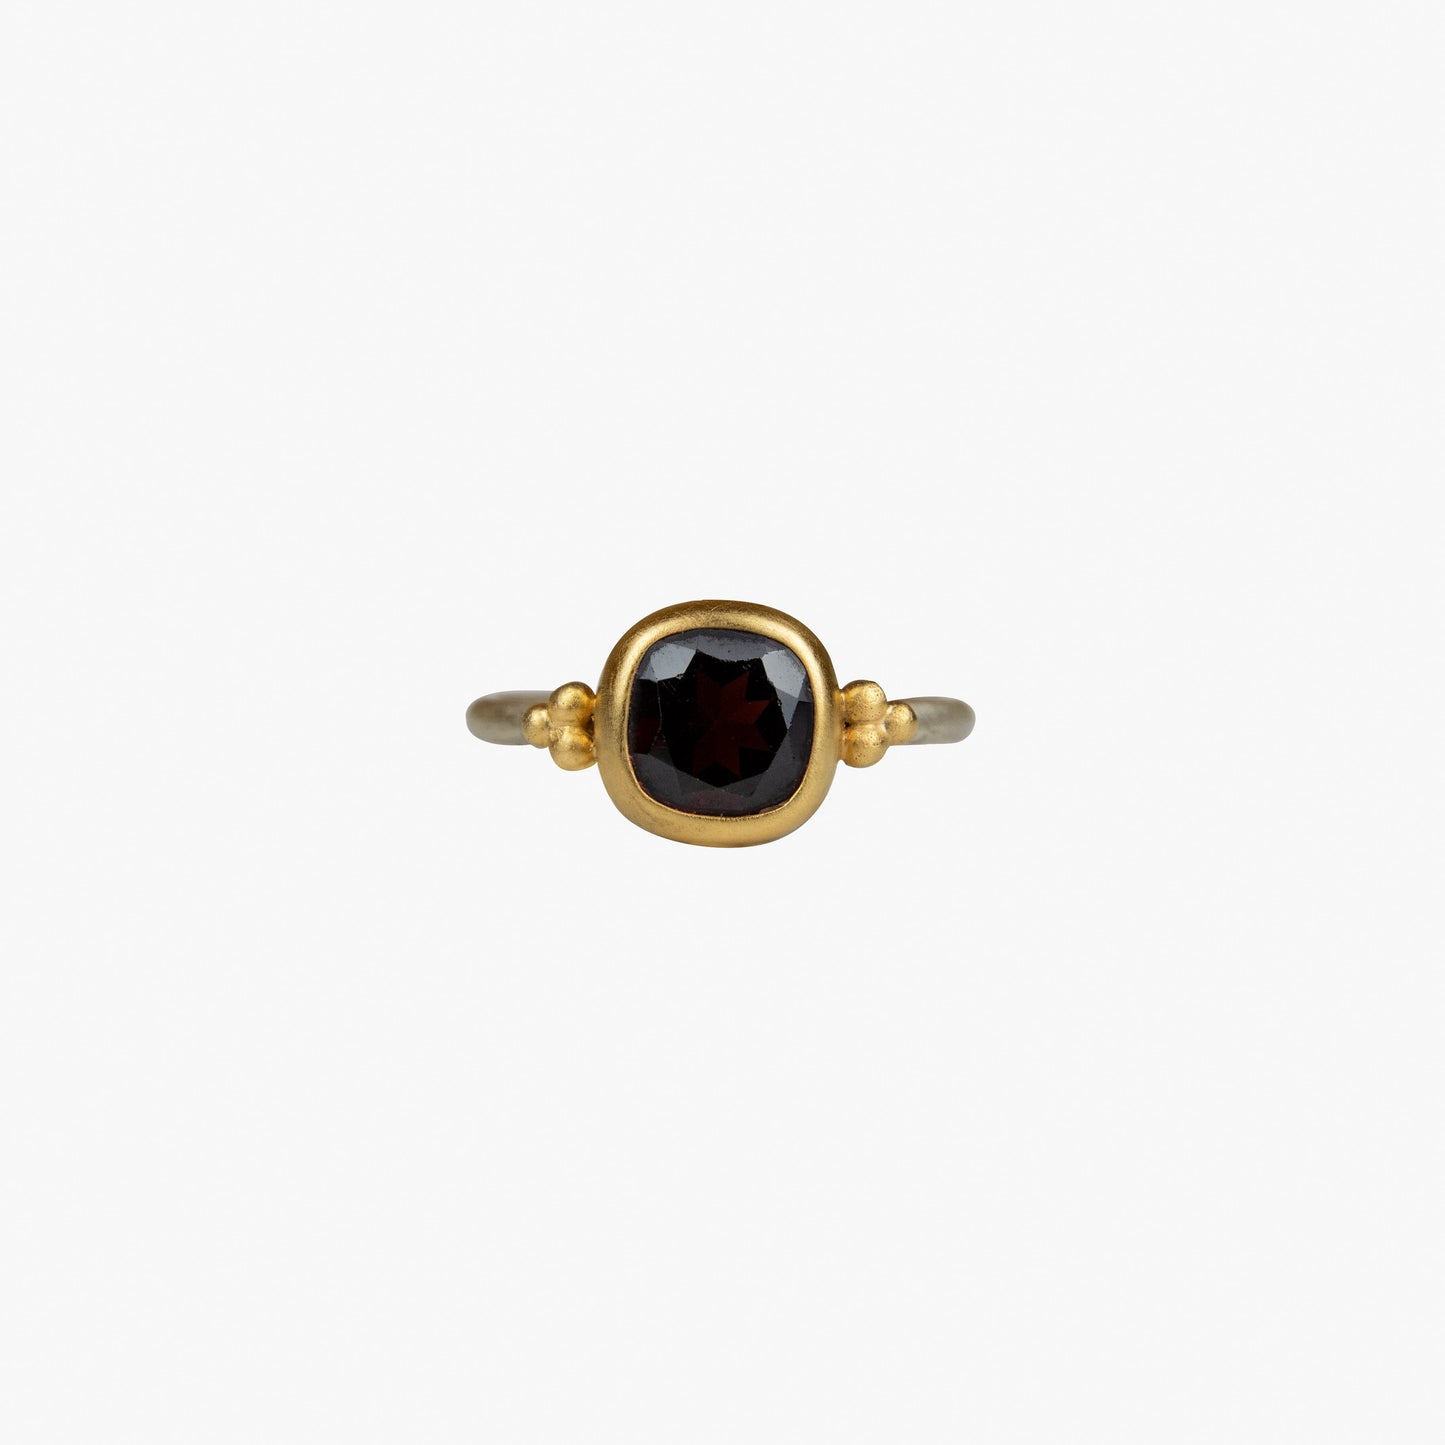 Der Ring KAYA besteht aus Sterlingsilber, einer galvanischen Vergoldung sowie einem Granat-Stein